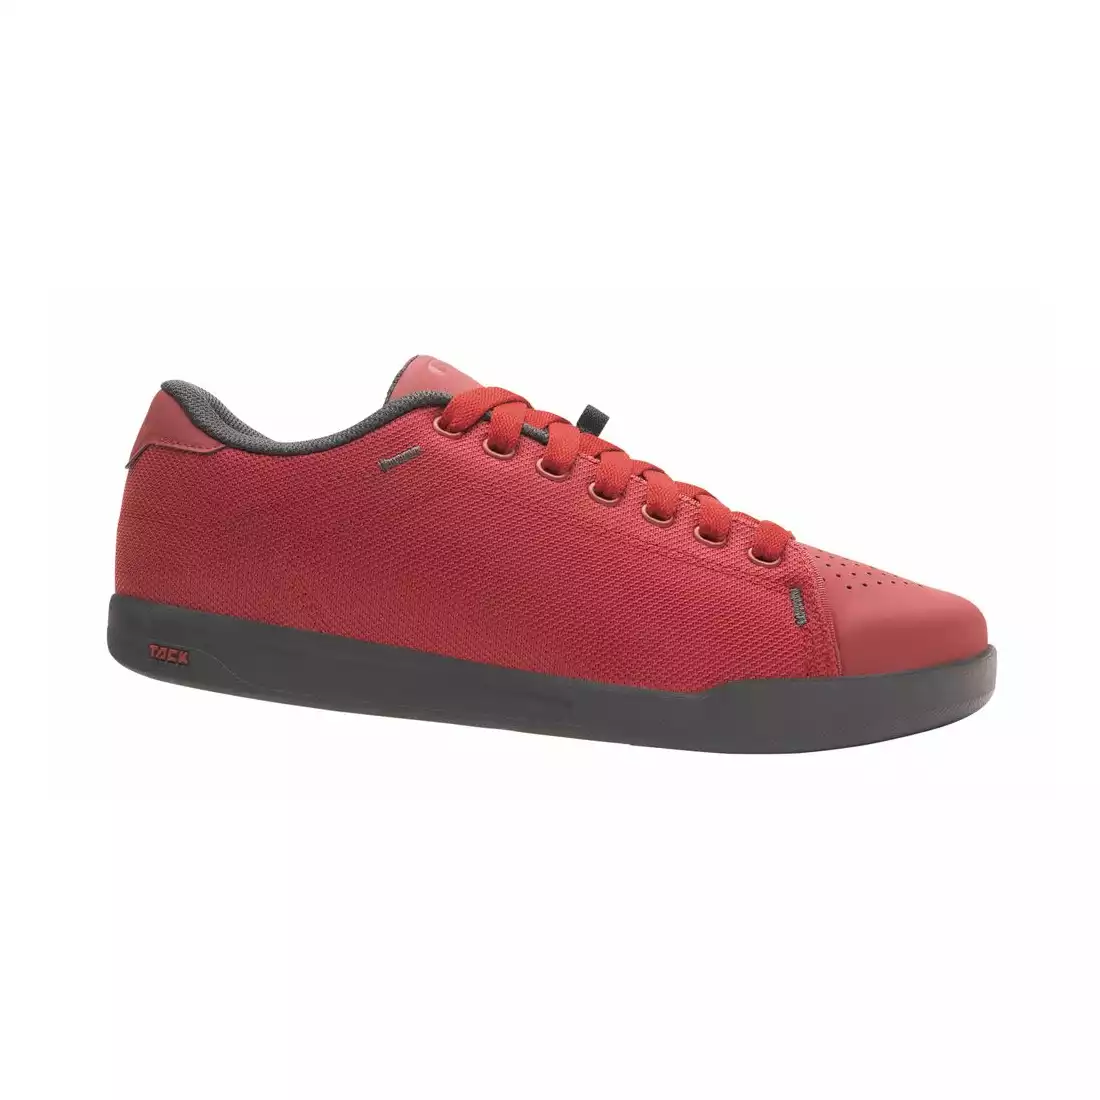 GIRO DEED Men's cycling shoes, red